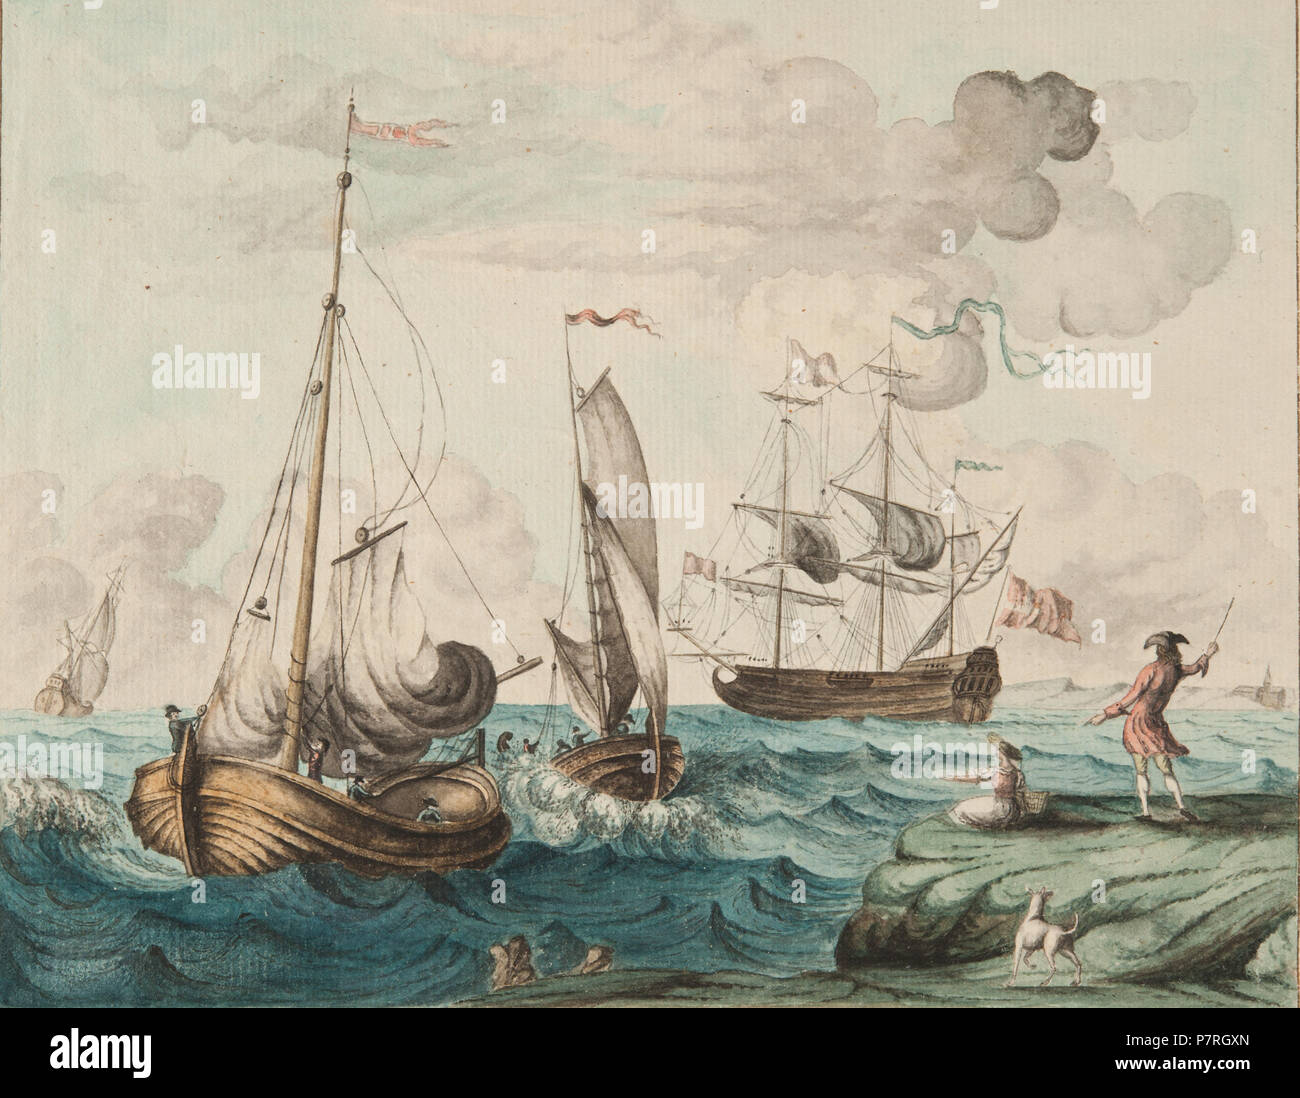 237 Kust med människor och fartyg, ett med dansk flagga - Sjöhistoriska museet - SB 16543 Foto Stock